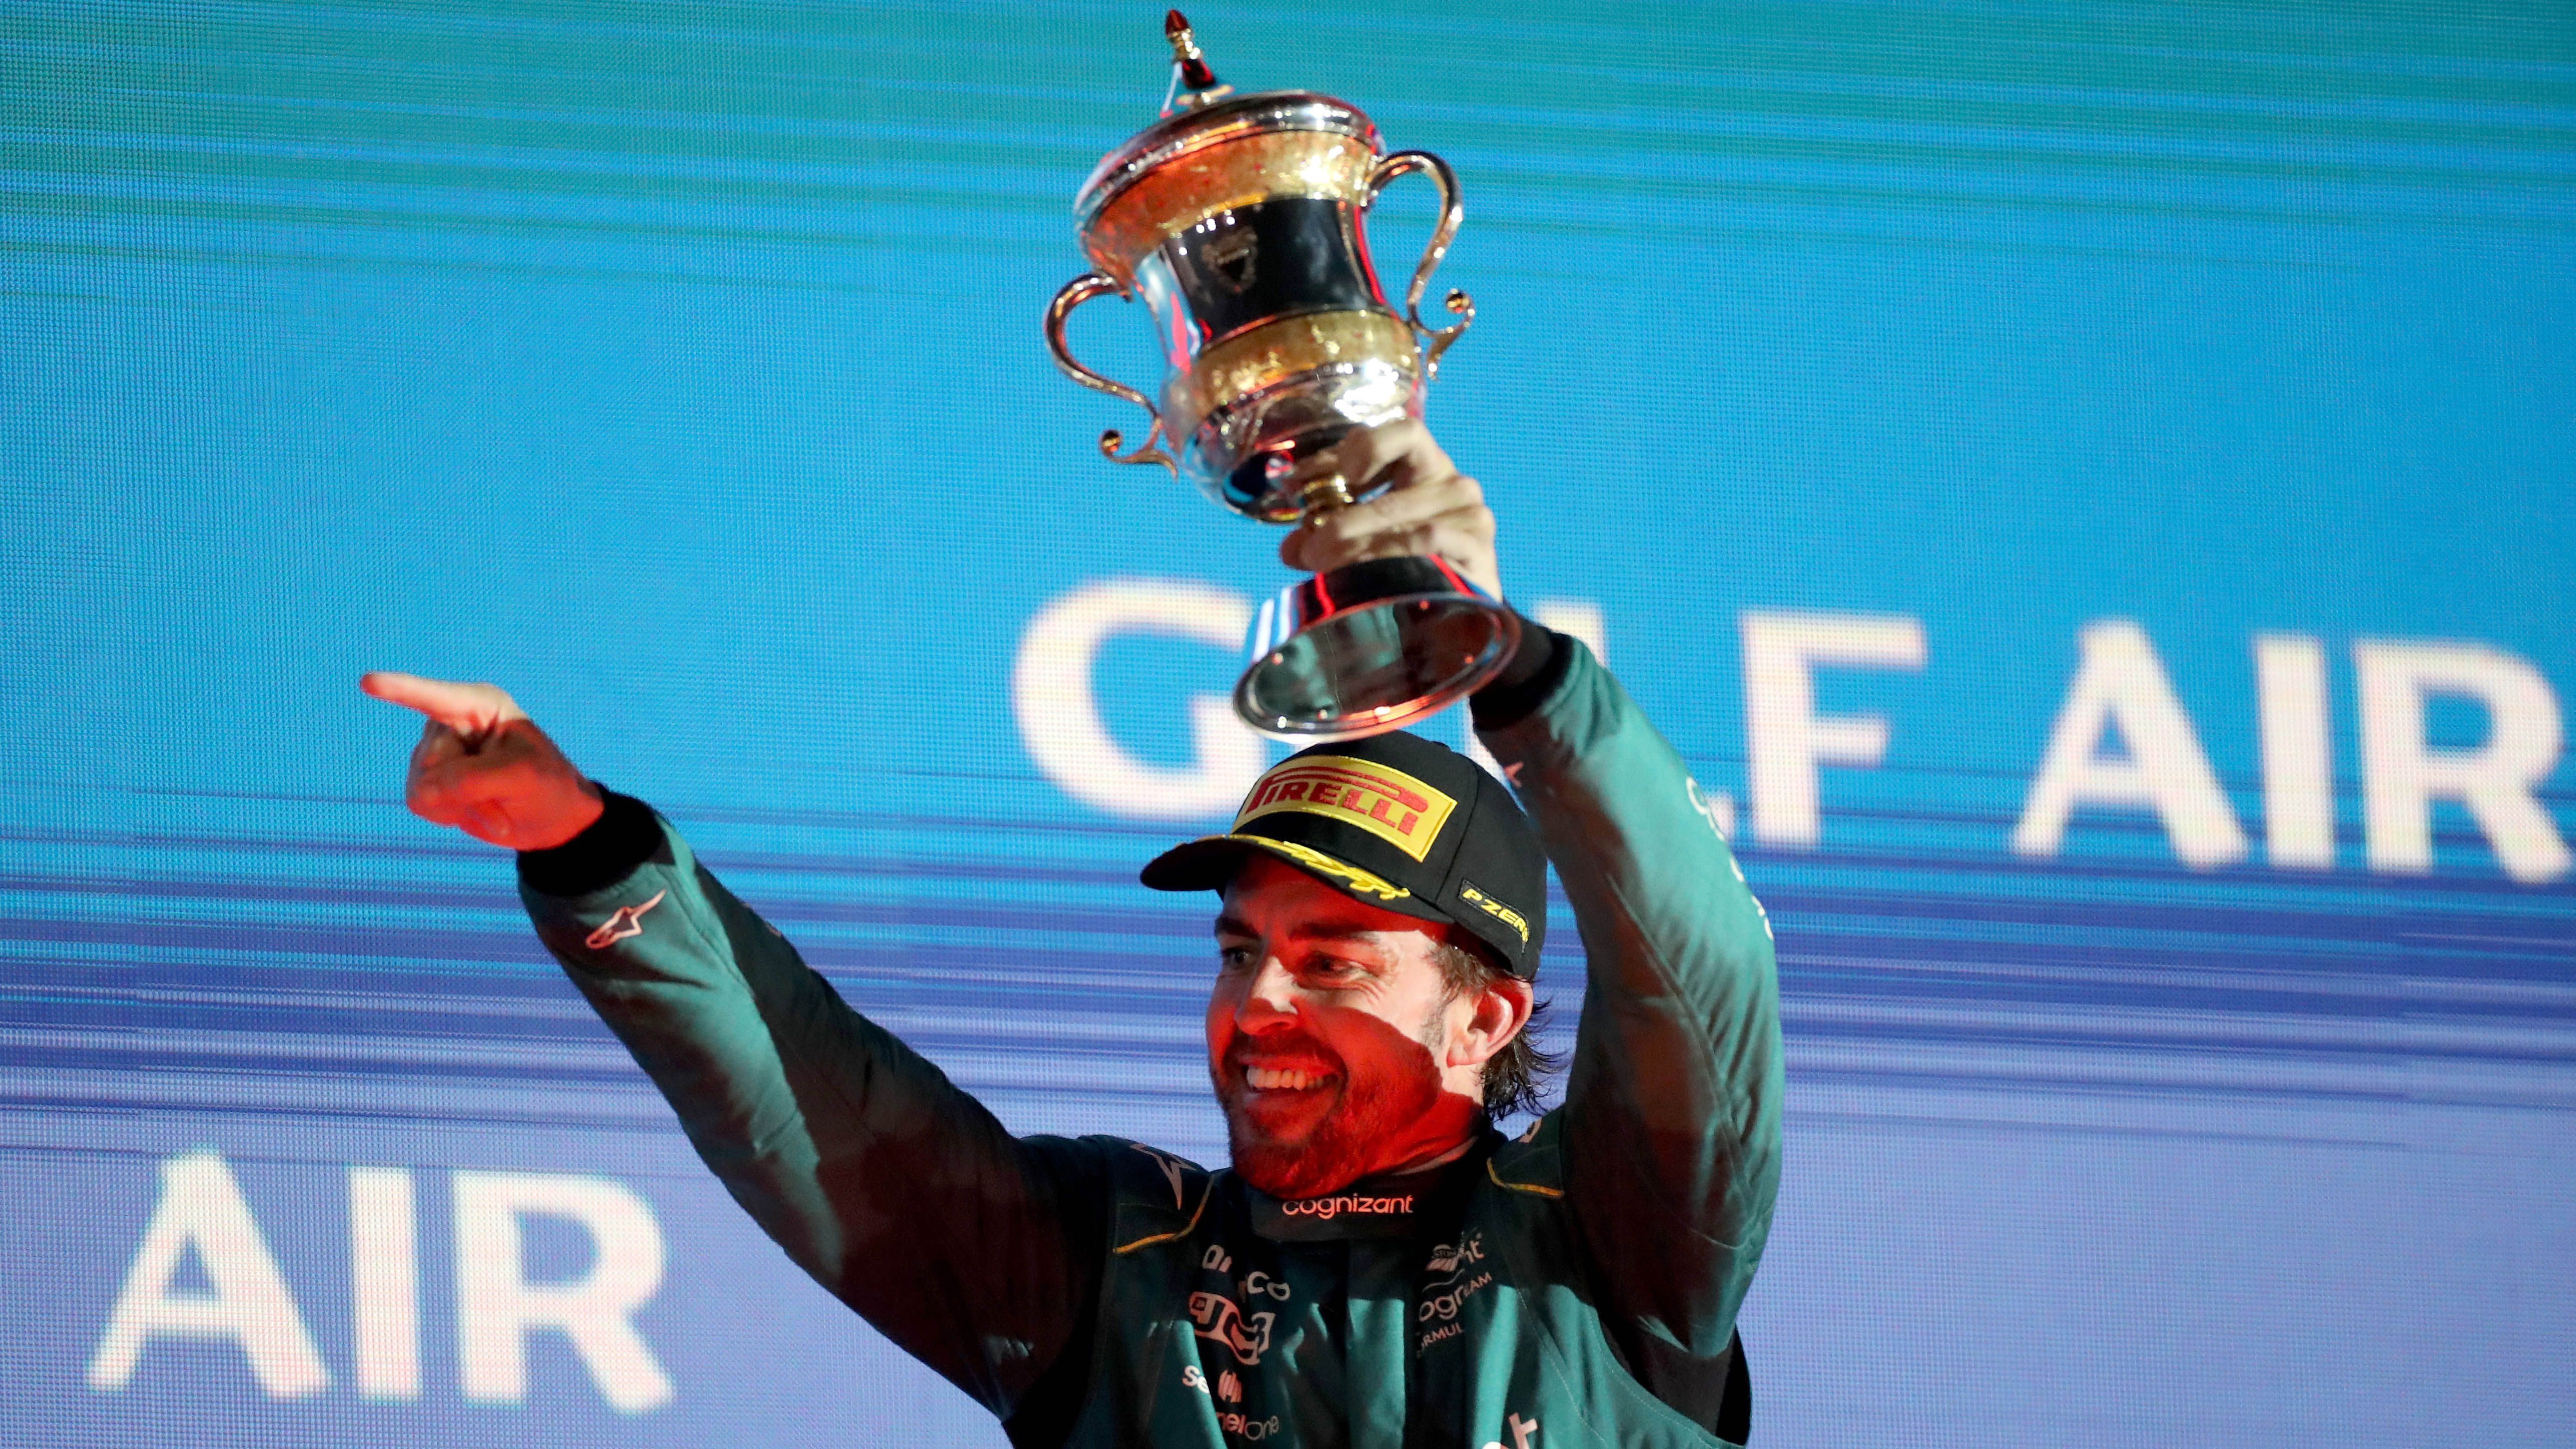 
                <strong>Platz 16: Fernando Alonso </strong><br>
                &#x2022; Alter: 41 Jahre, 7 Monate und 5 Tage <br>&#x2022; Großer Preis von Bahrain: 2023<br>&#x2022; Position: Dritter Platz<br>
              